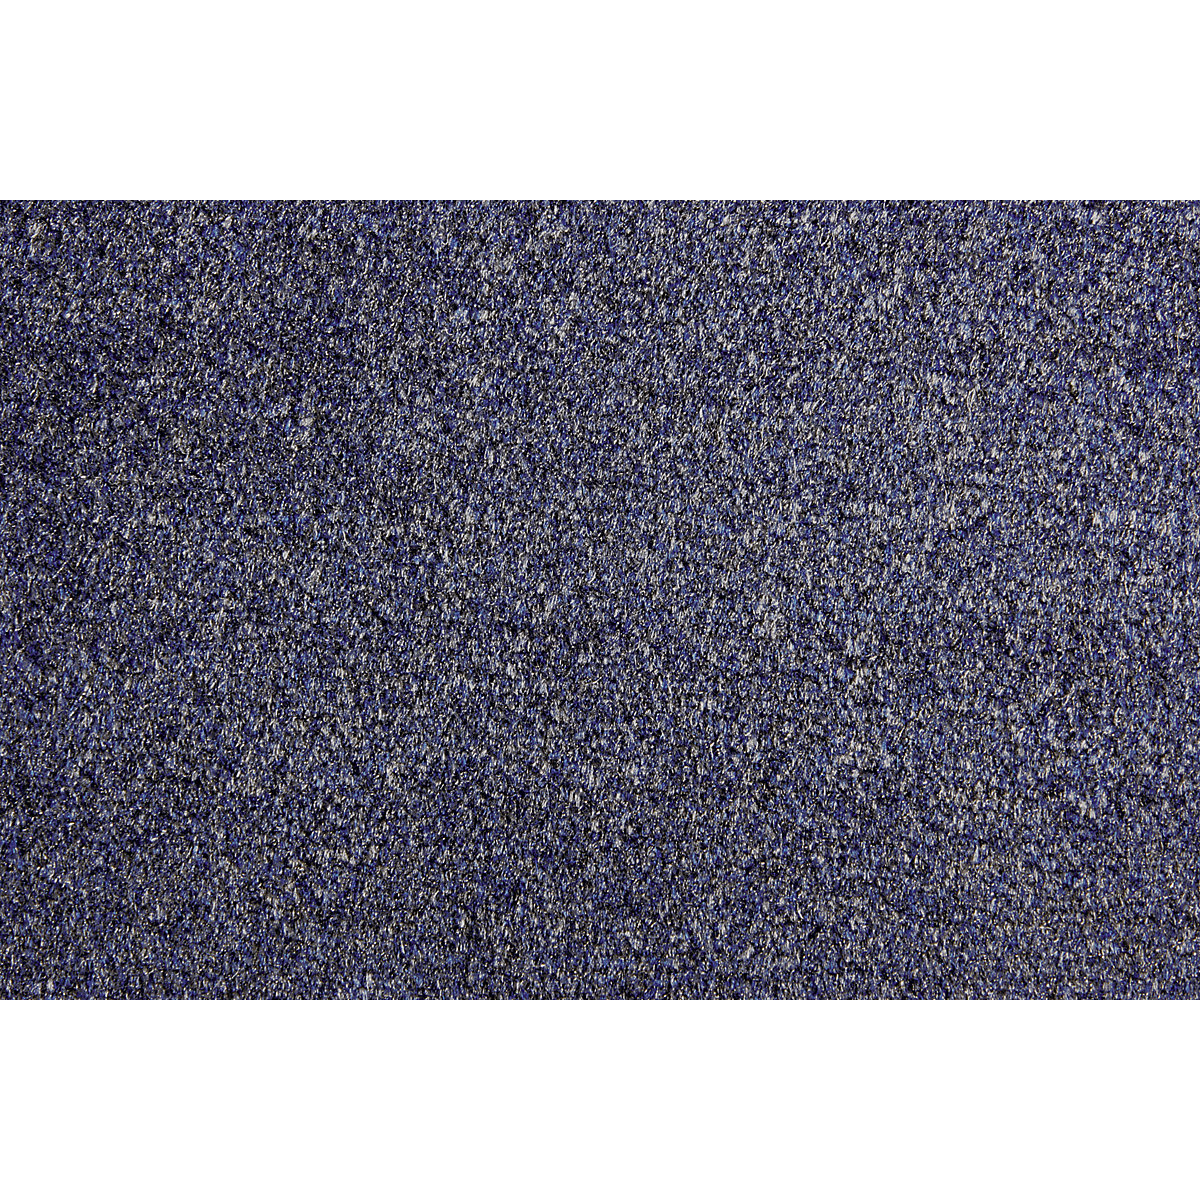 Covoraș pentru reținerea impurităților EAZYCARE AQUA, lung. x lăț. 1800 x 1200 mm, albastru